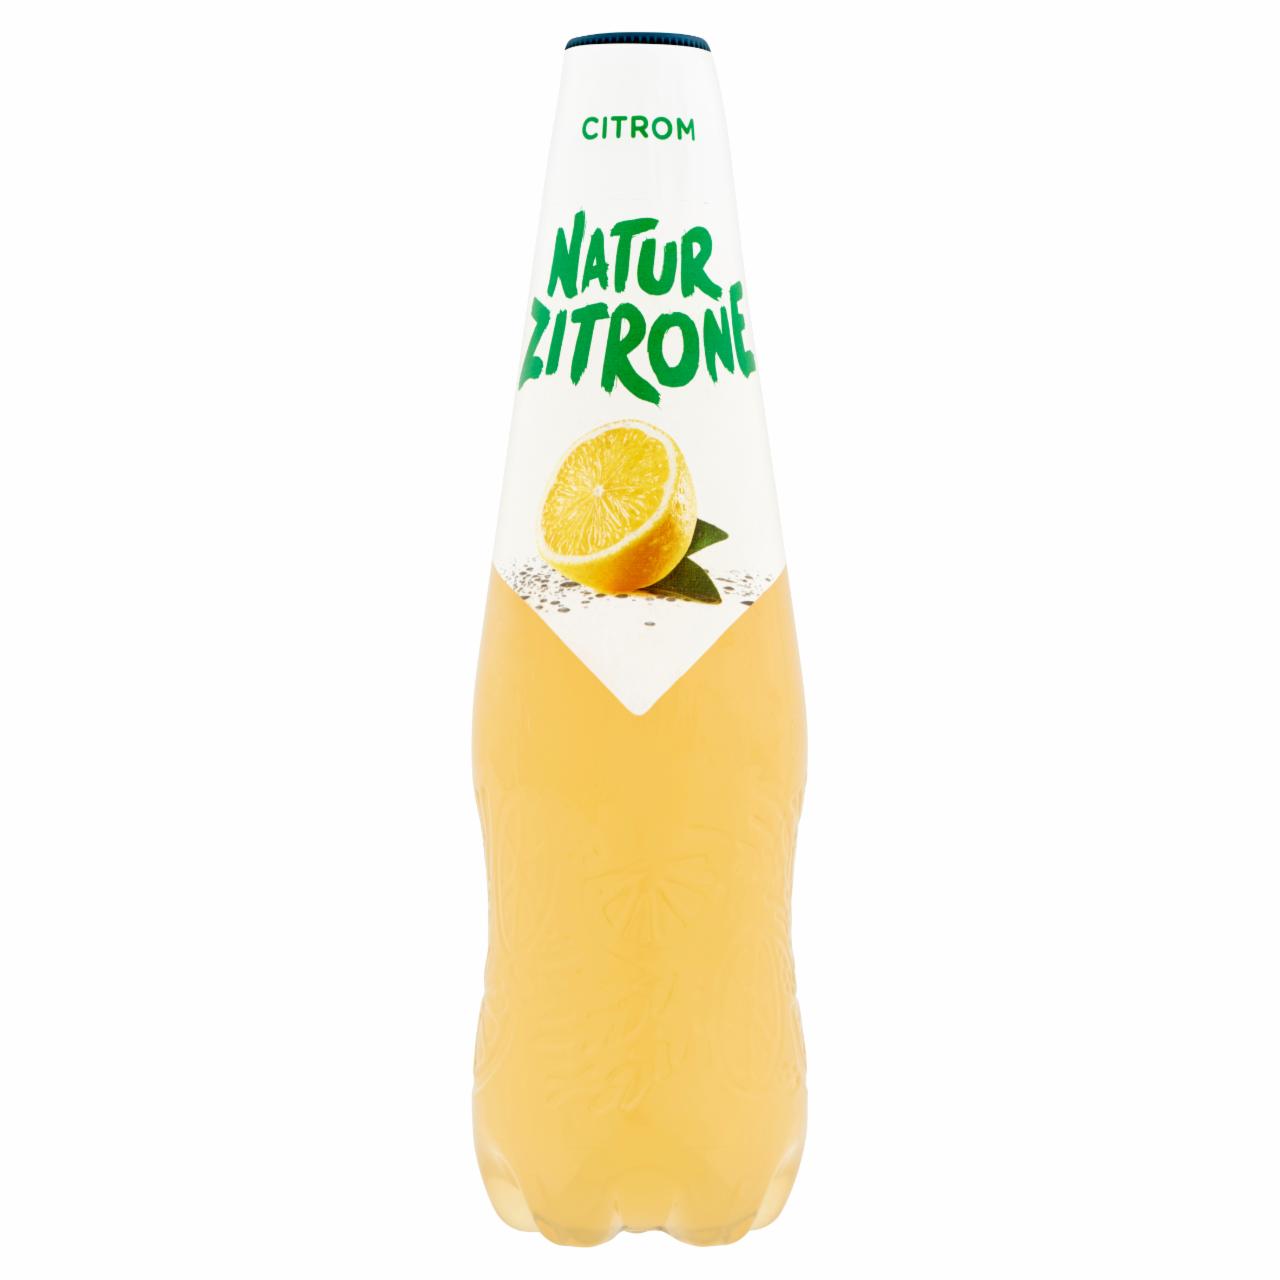 Képek - Natur Zitrone alkoholmentes, citrom ízű szénsavas ital 0,5 l PET palack